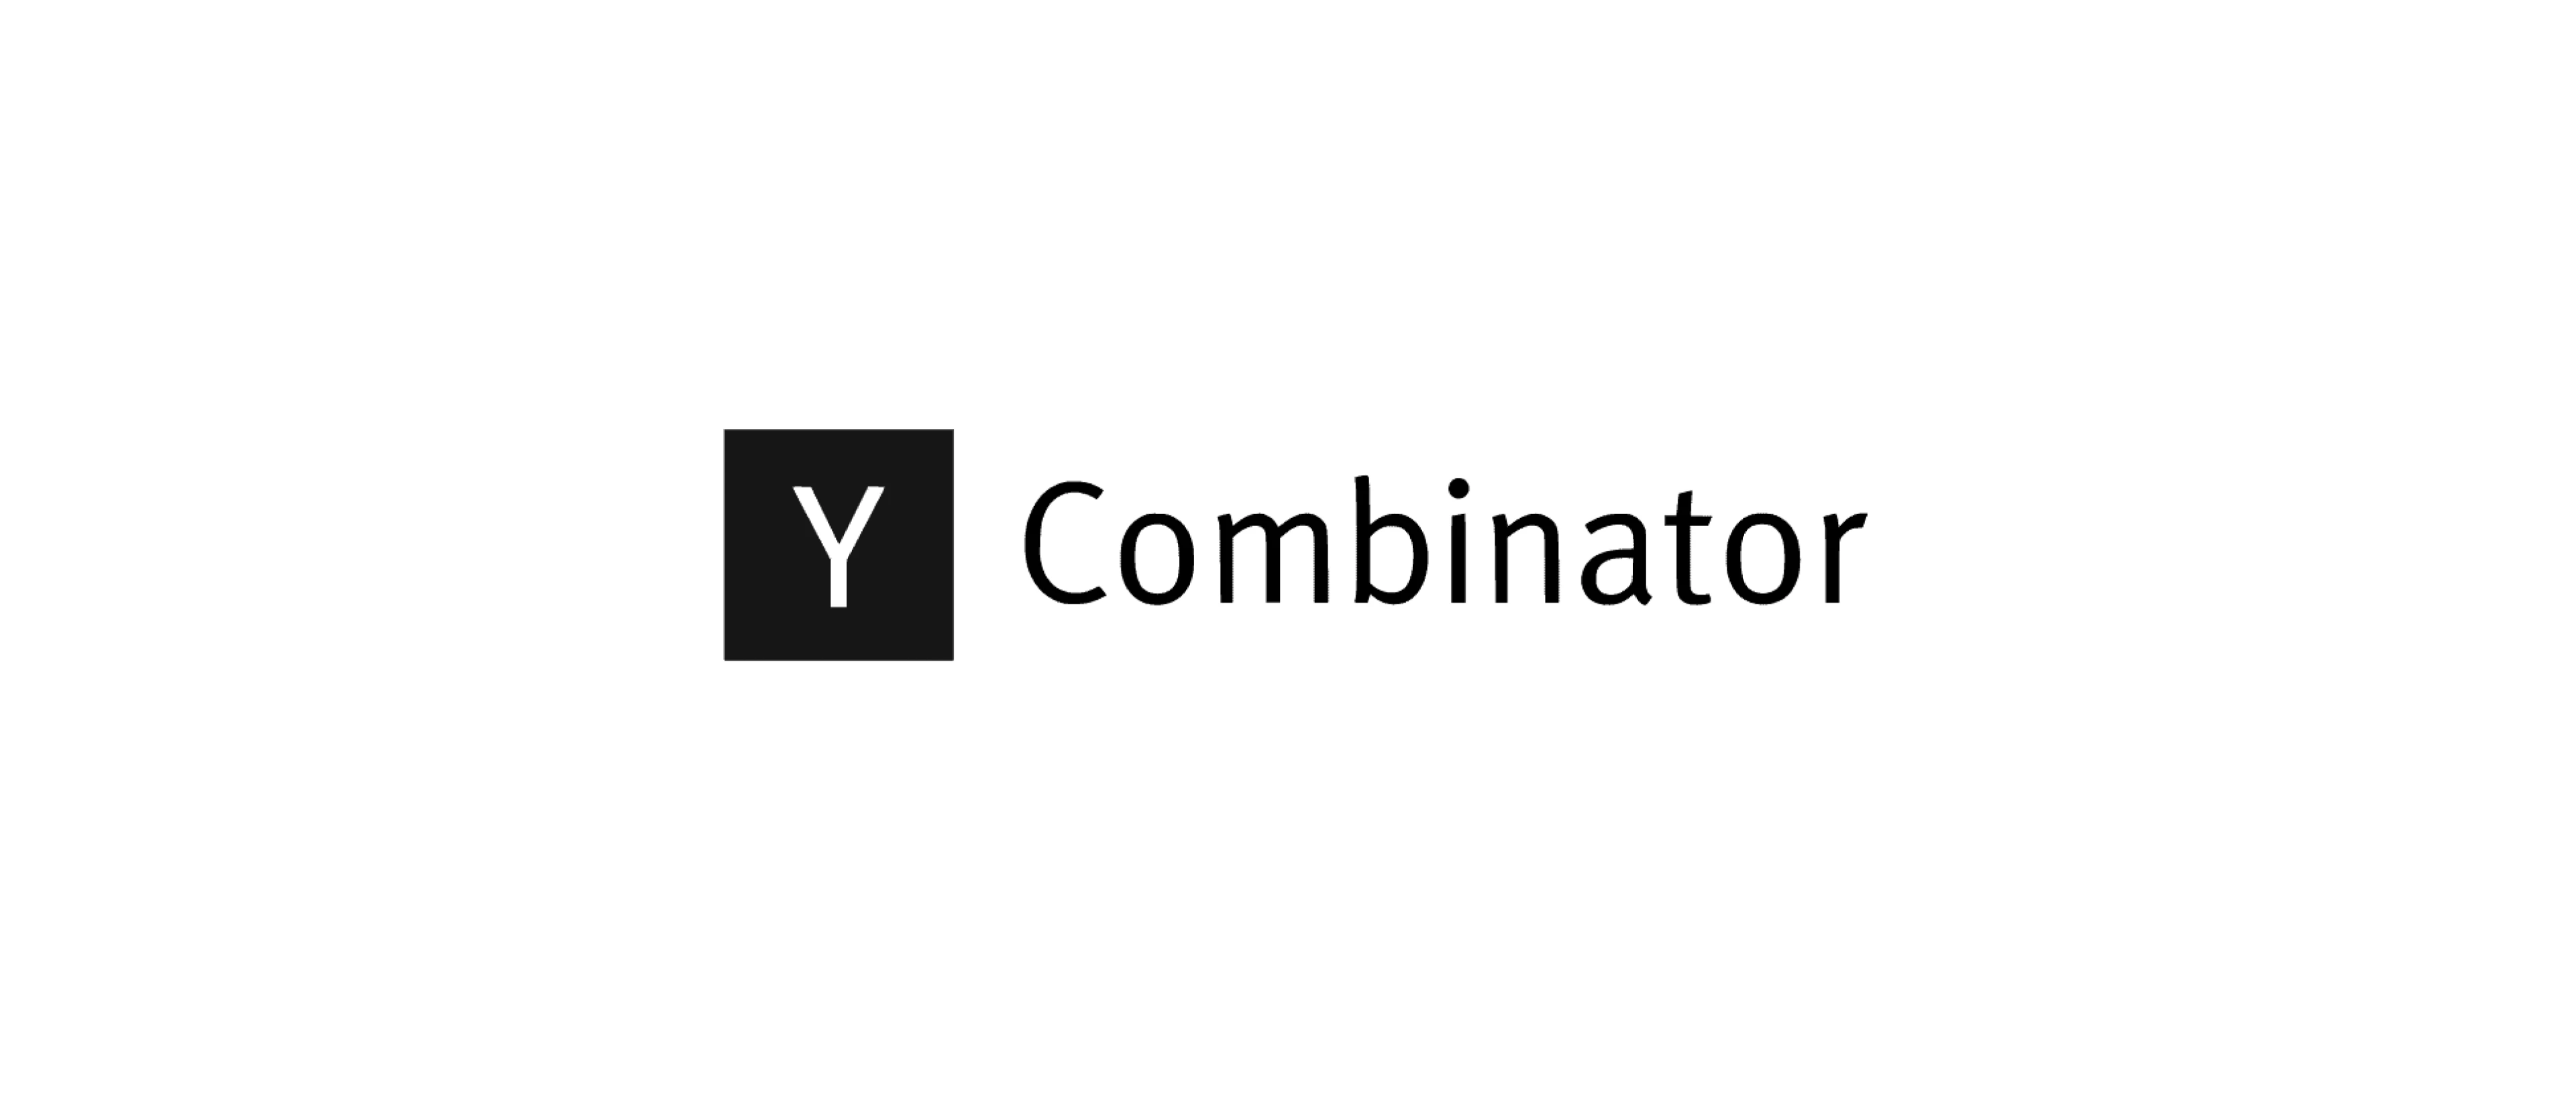 LOGO Y Combinator